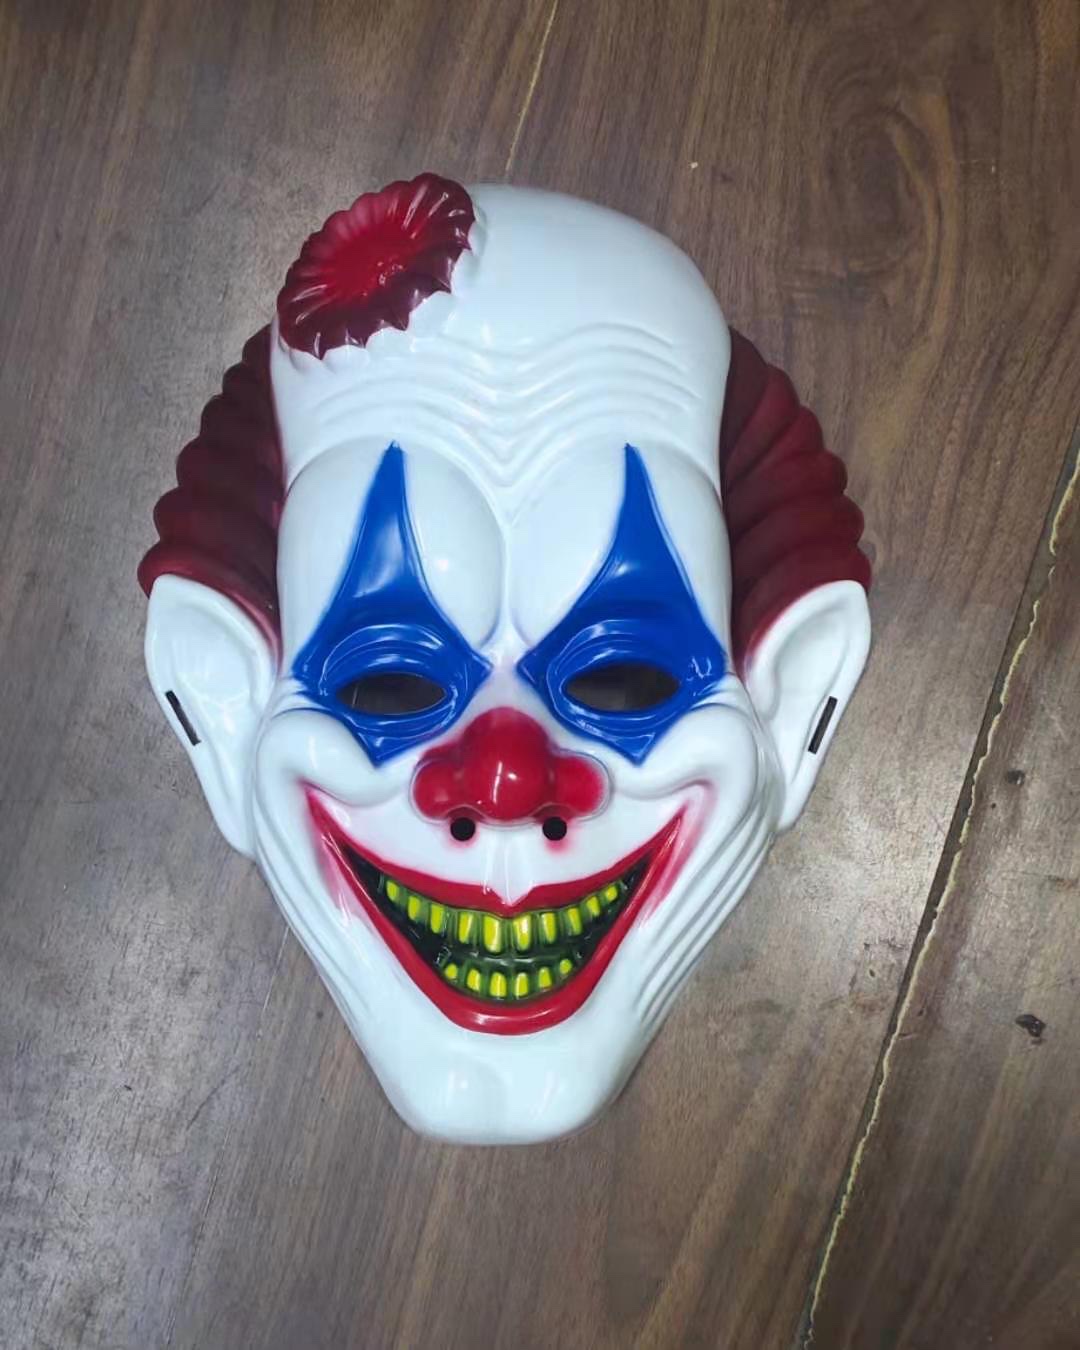 小丑面具万圣节派对装扮玩具批发图